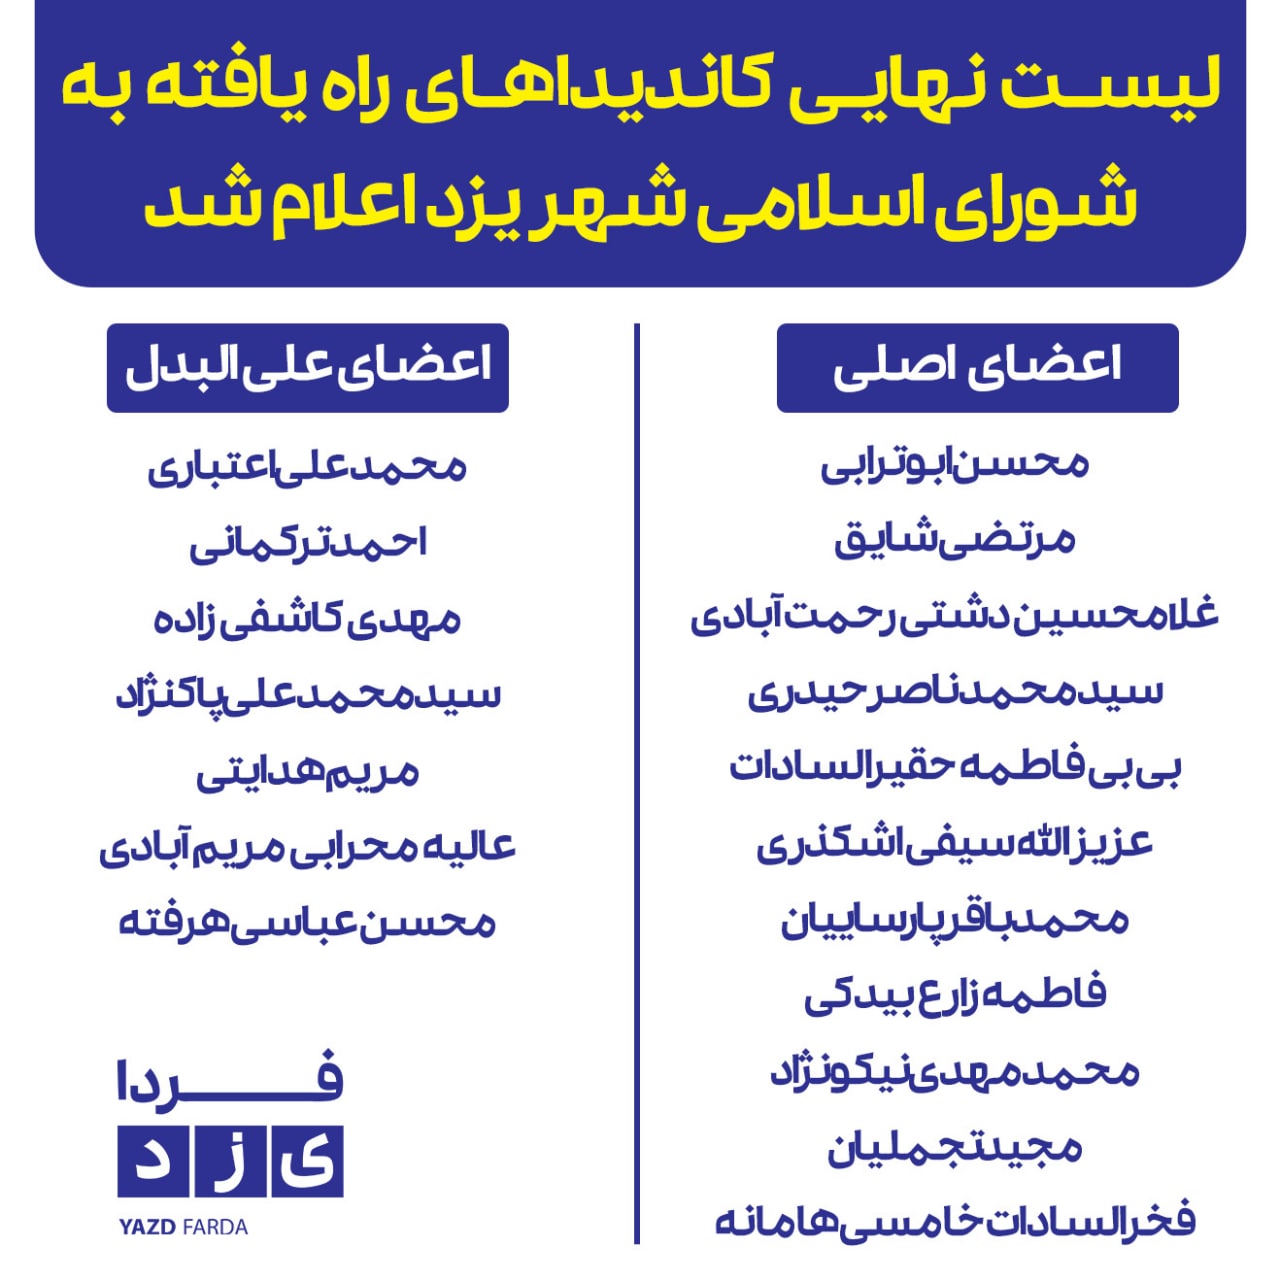 فوری؛ لیست نهایی کاندیداهای راه یافته به شورای اسلامی شهر یزد اعلام شد